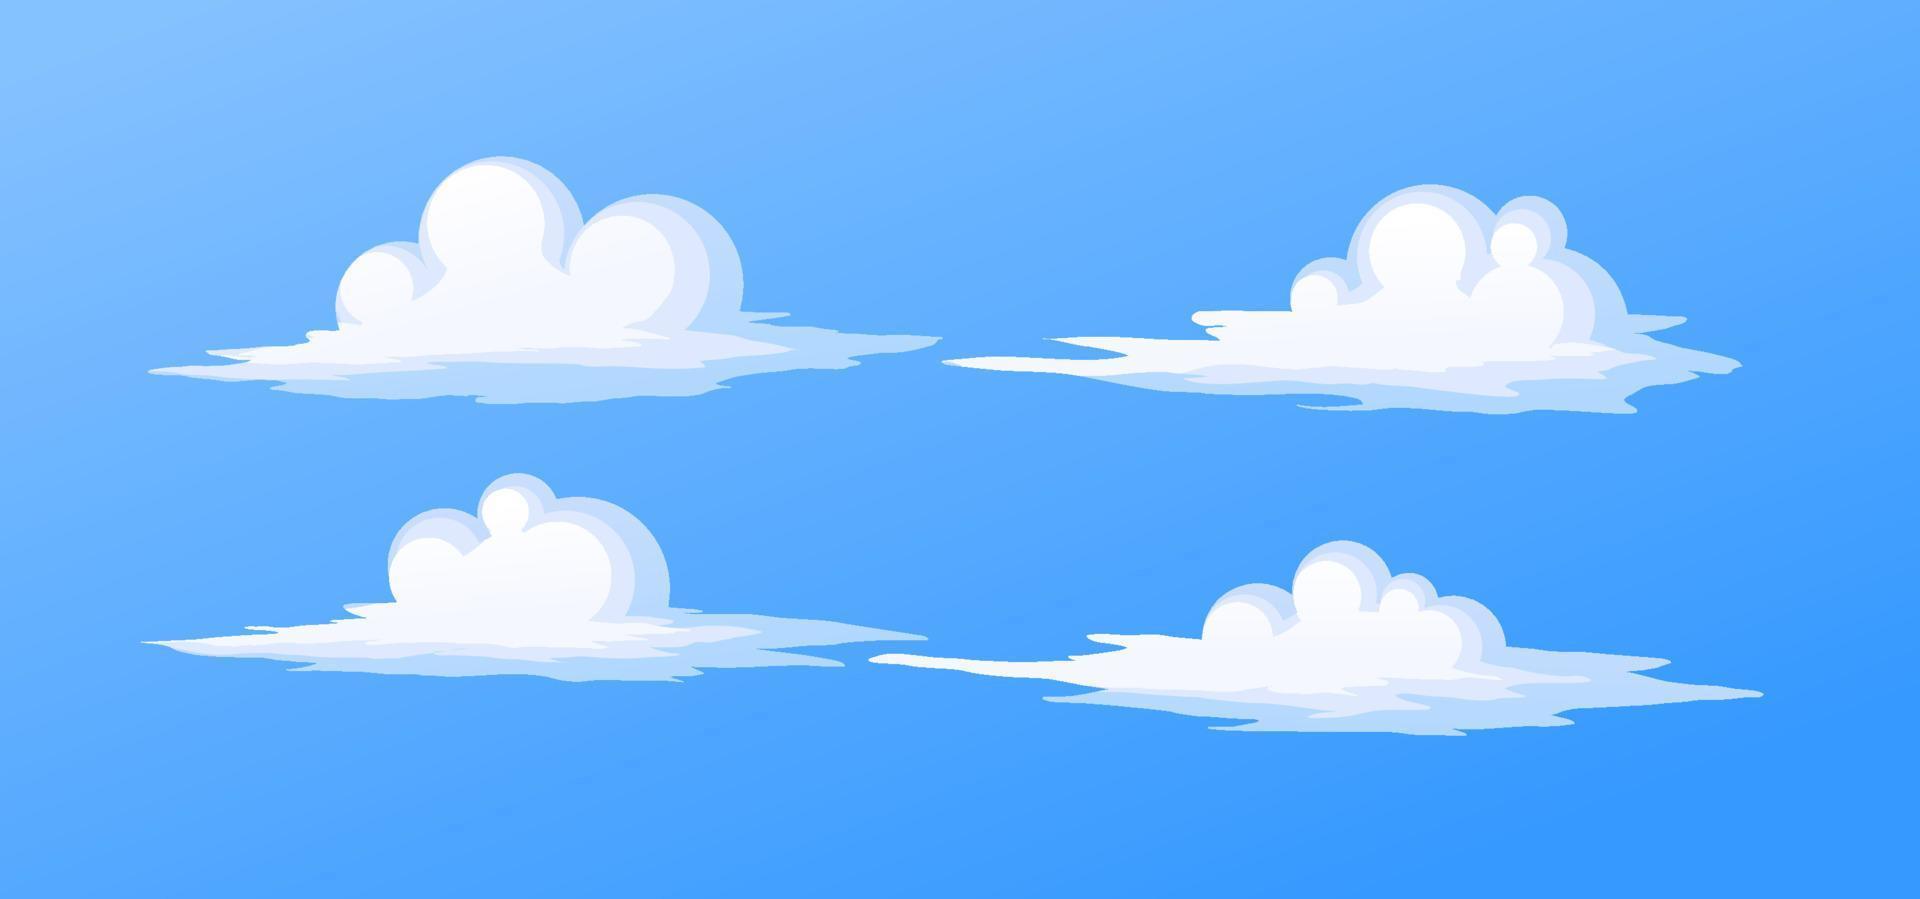 witte wolken anime cartoon stijl in de hemel blauwe vectorillustratie vector